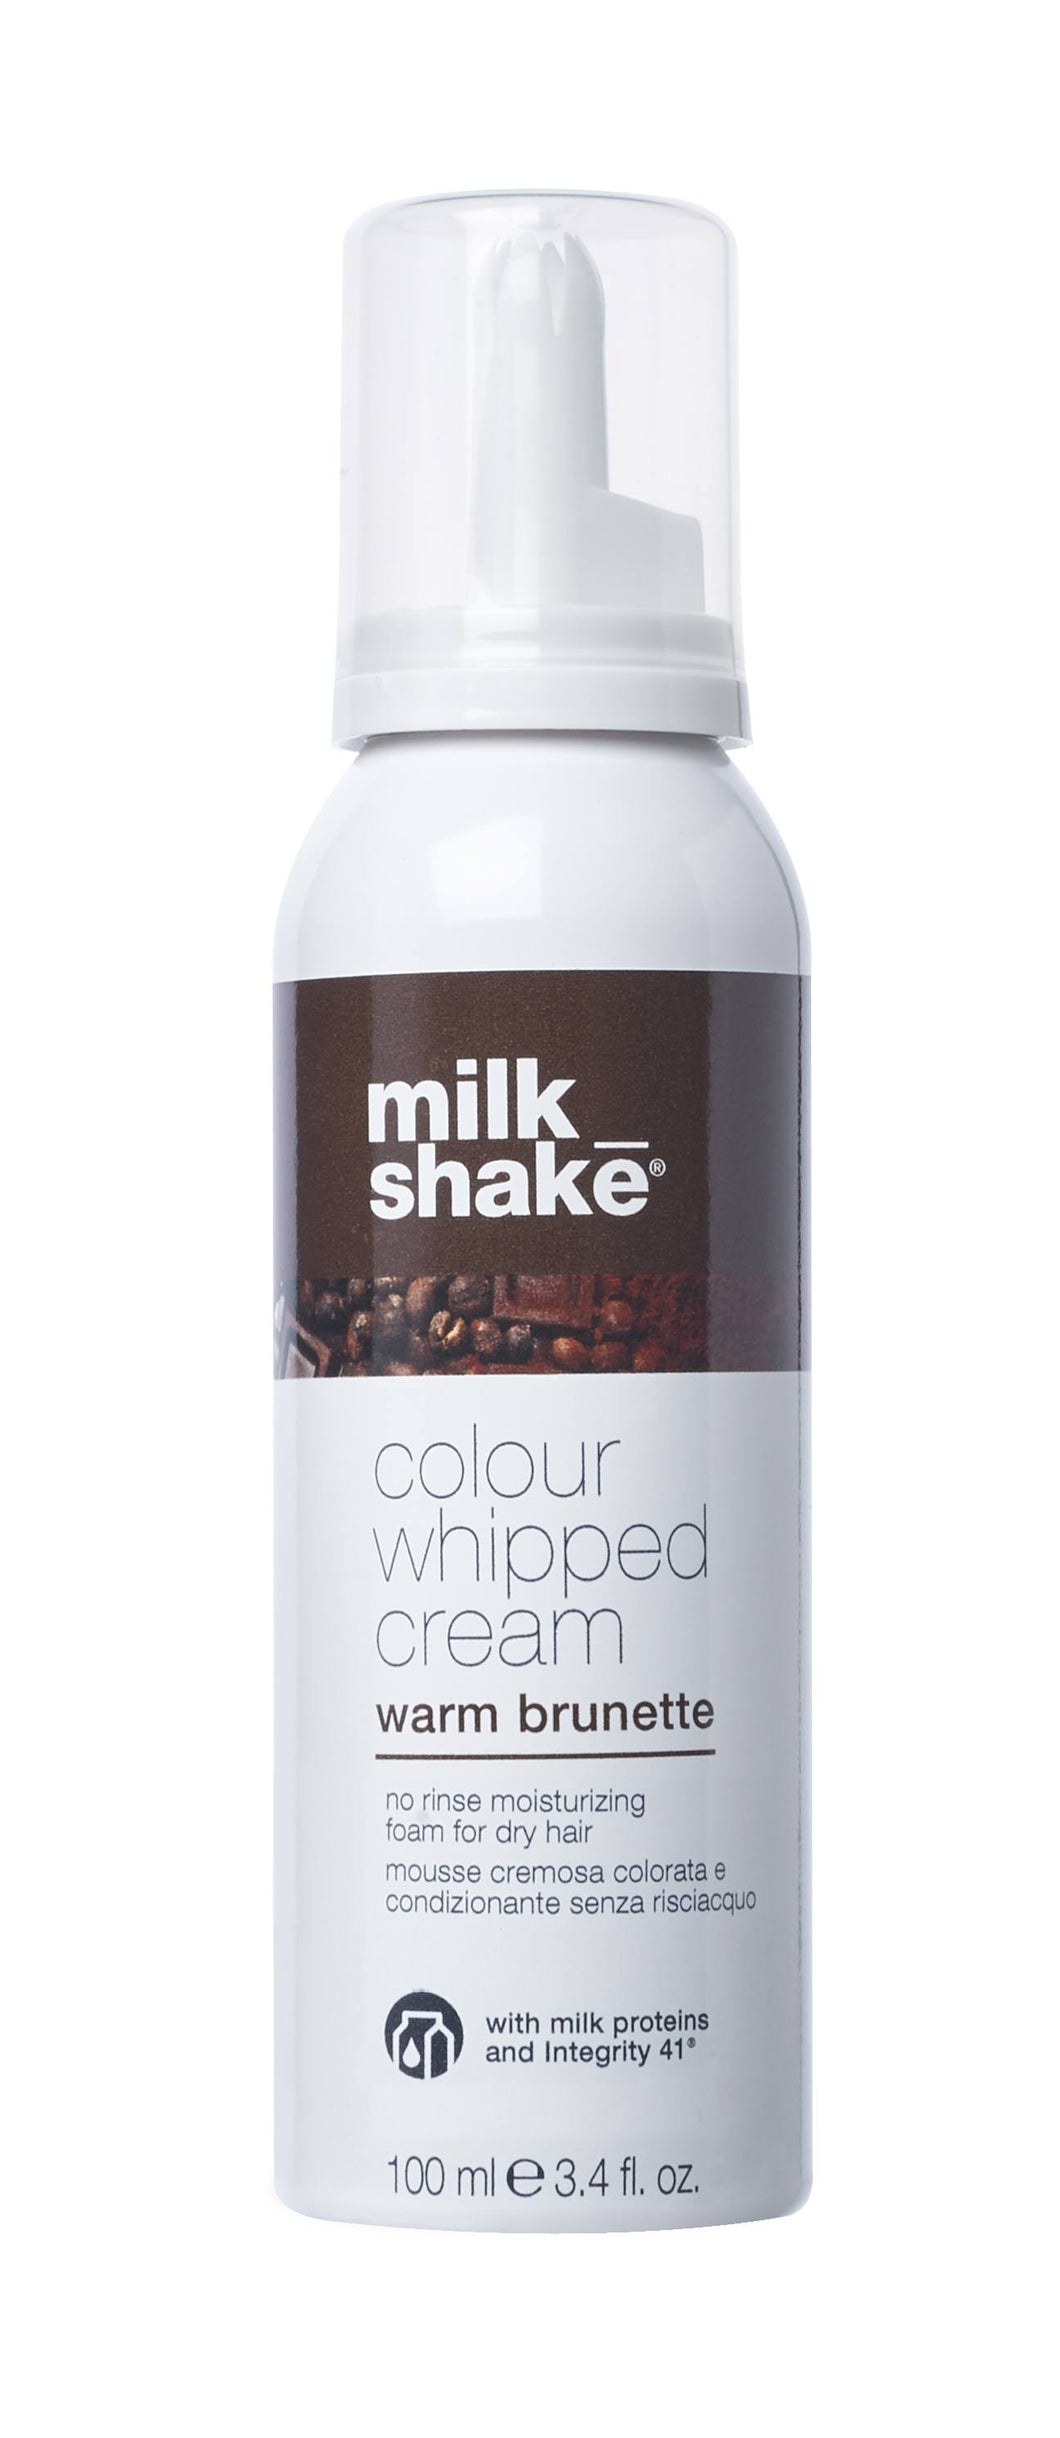 milk_shake colour whipped cream warm brunette